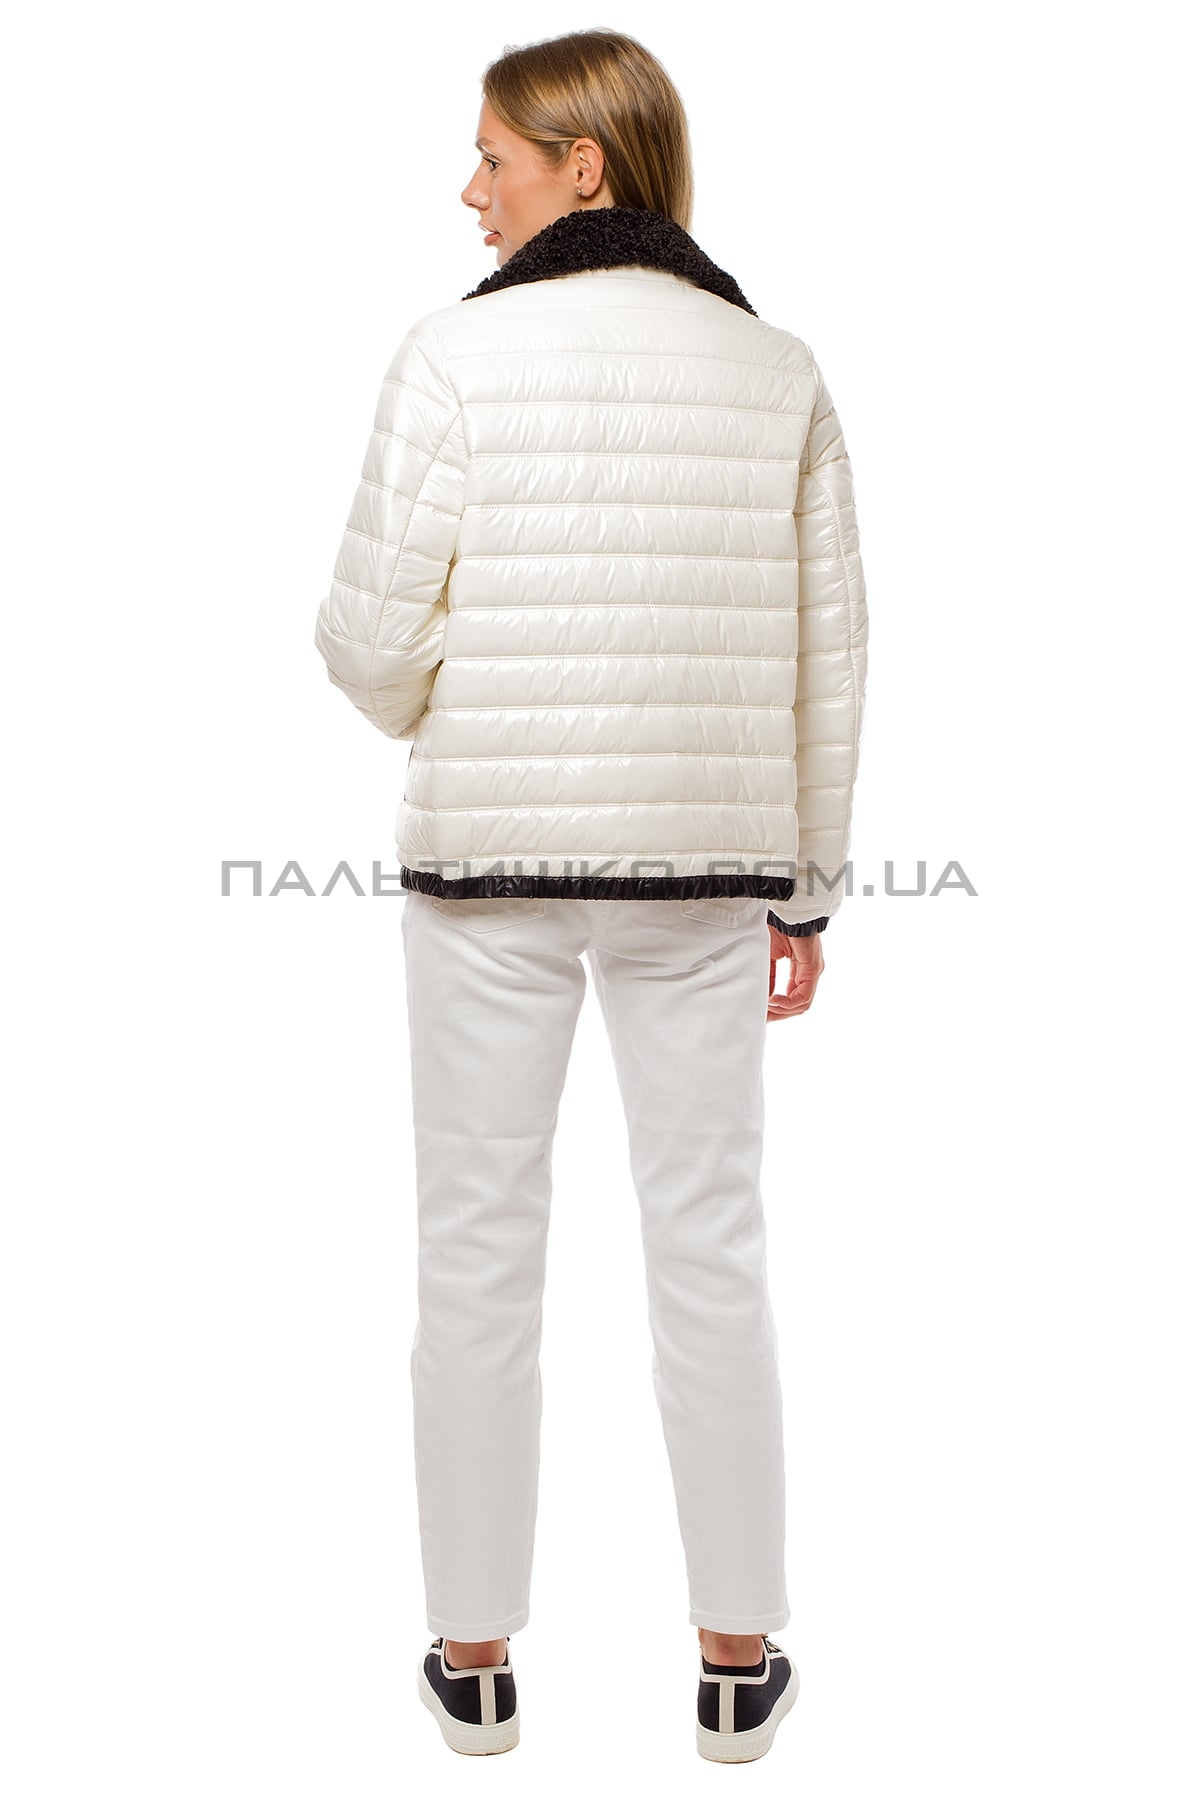  Жіноча демісезонна біла куртка з коміром